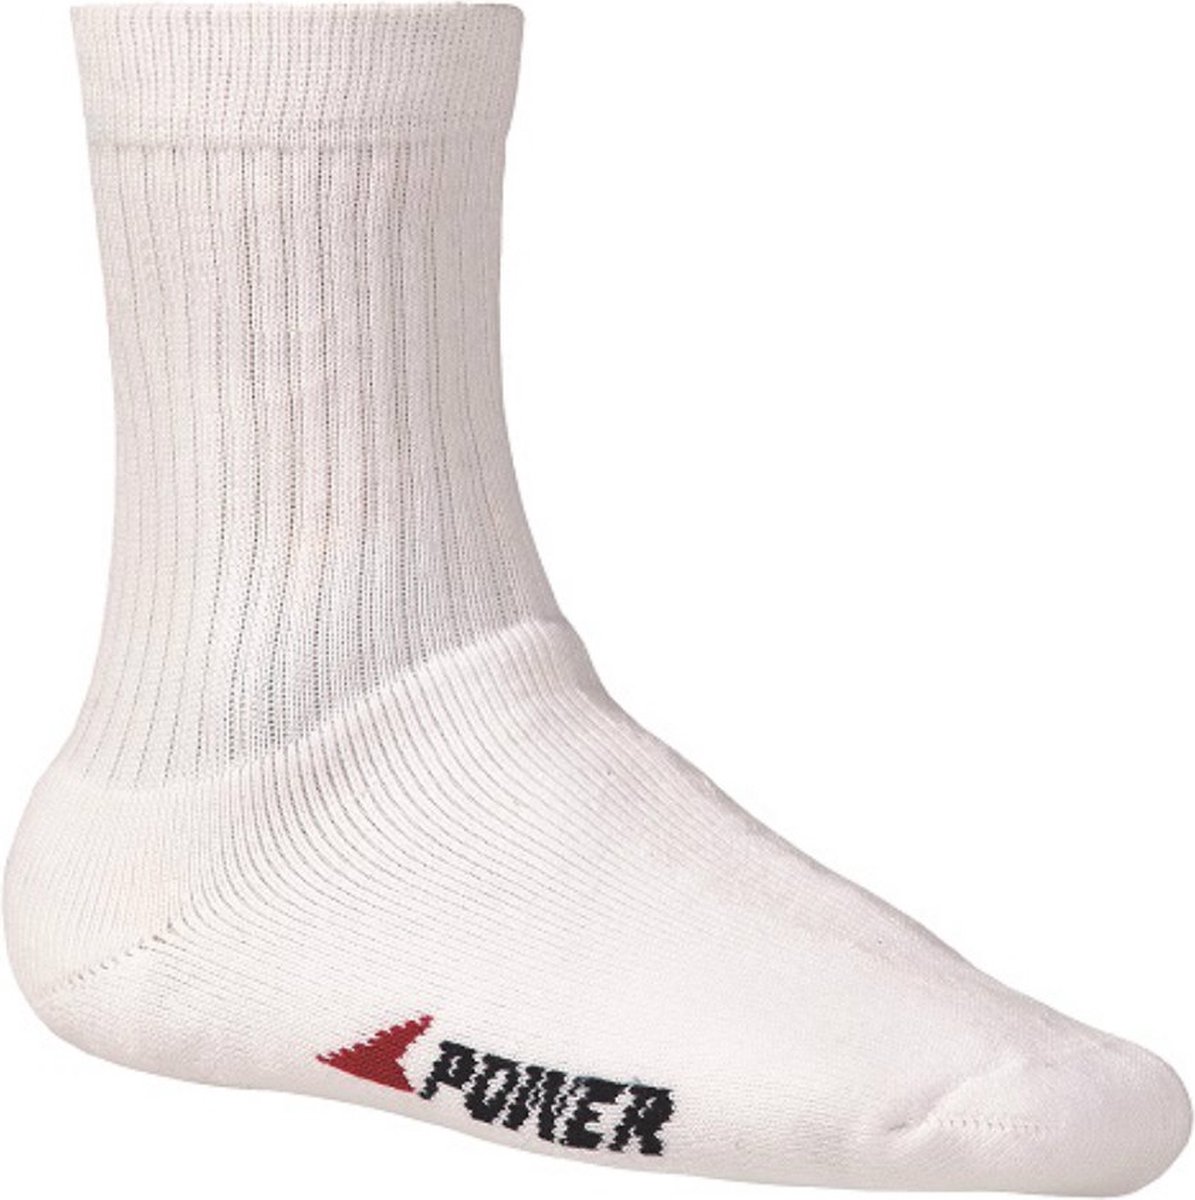 Bata badstof sokken Industrials Power - wit - 43-46